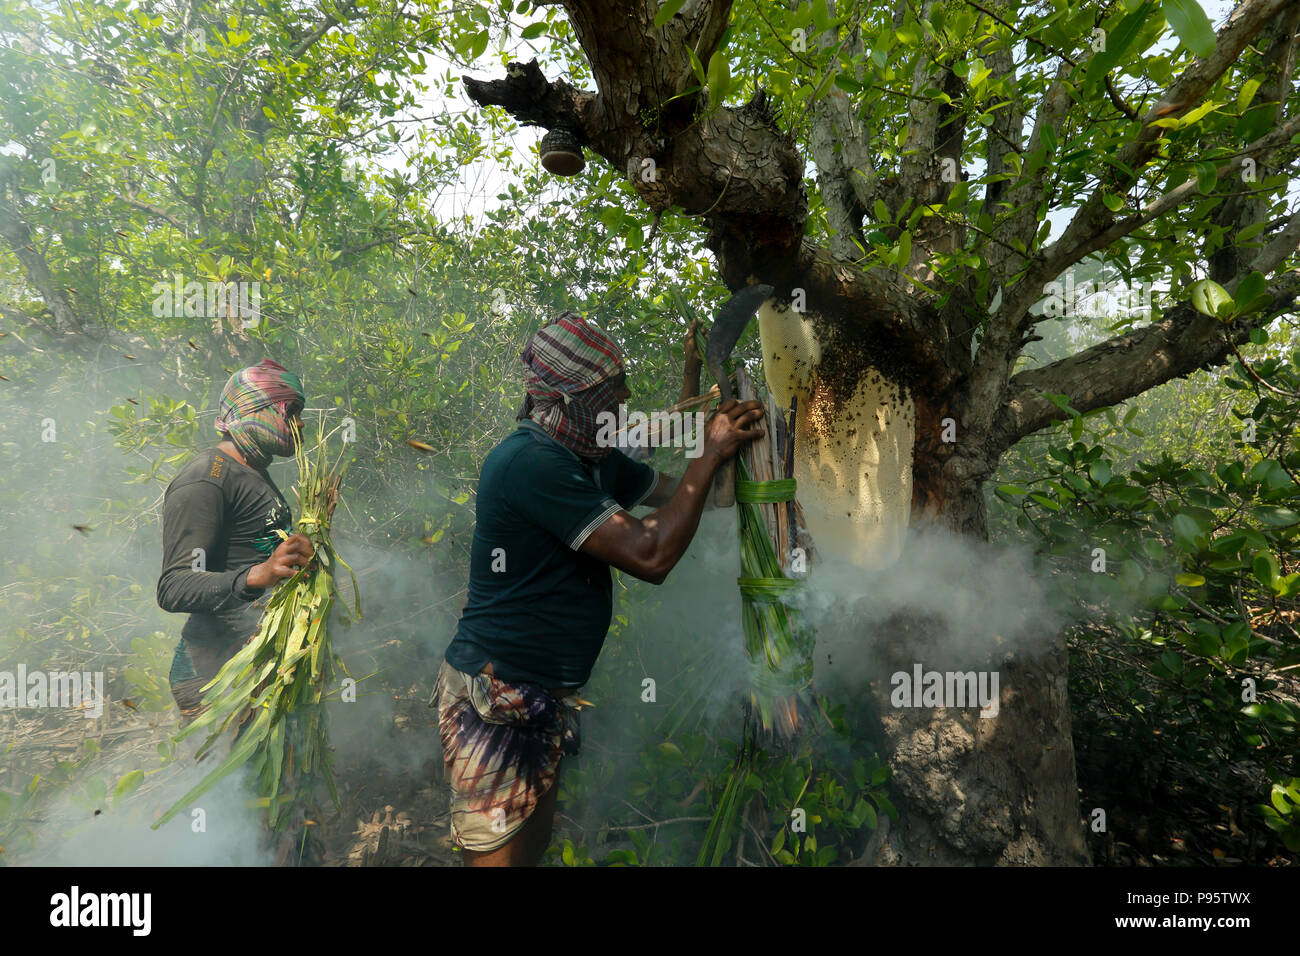 Der traditionelle Honig Sammlung in Sundarbans, der Weltgrößte Mangrovenwald in Bangladesch. Satkhira, Bangladesch. Stockfoto